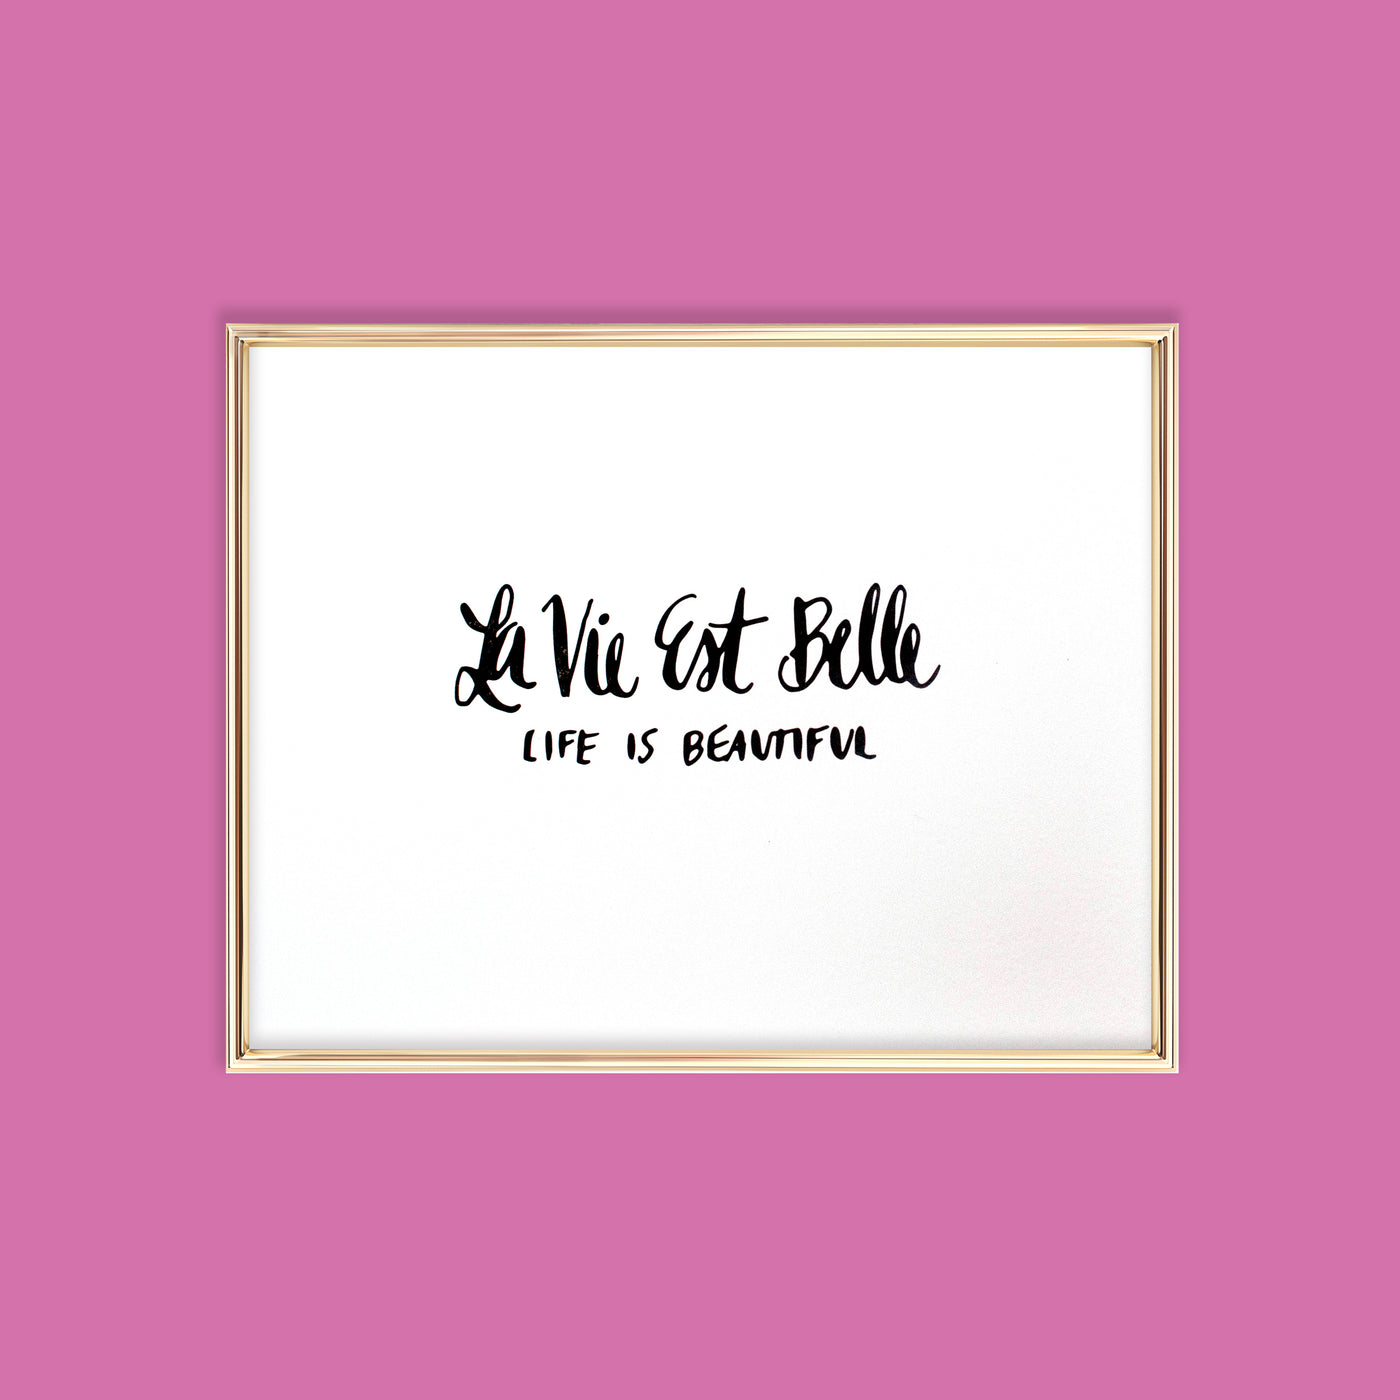 la vie est belle letterpress art print for wall decor